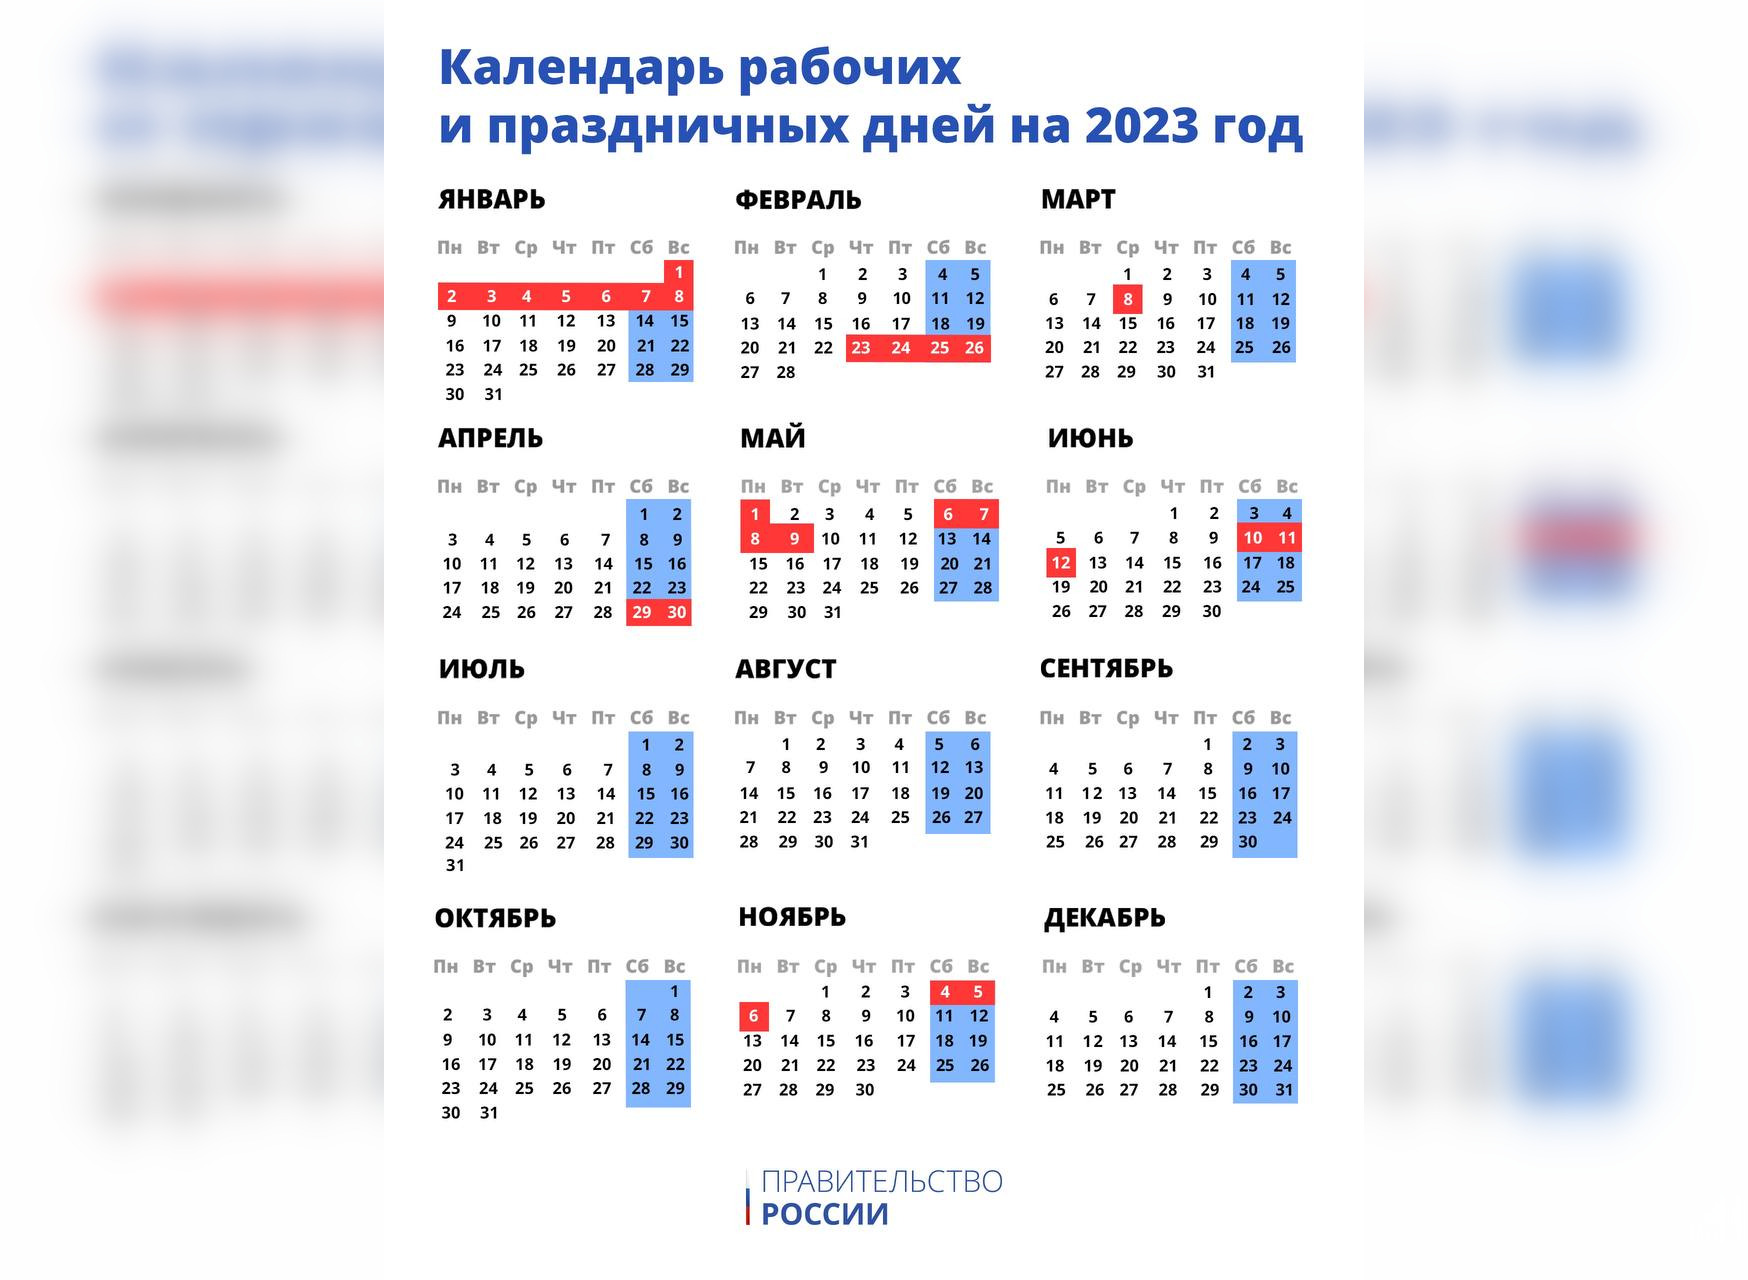 Календарь выходных дней в 2023 году. Фото © Telegram-канал Правительства РФ